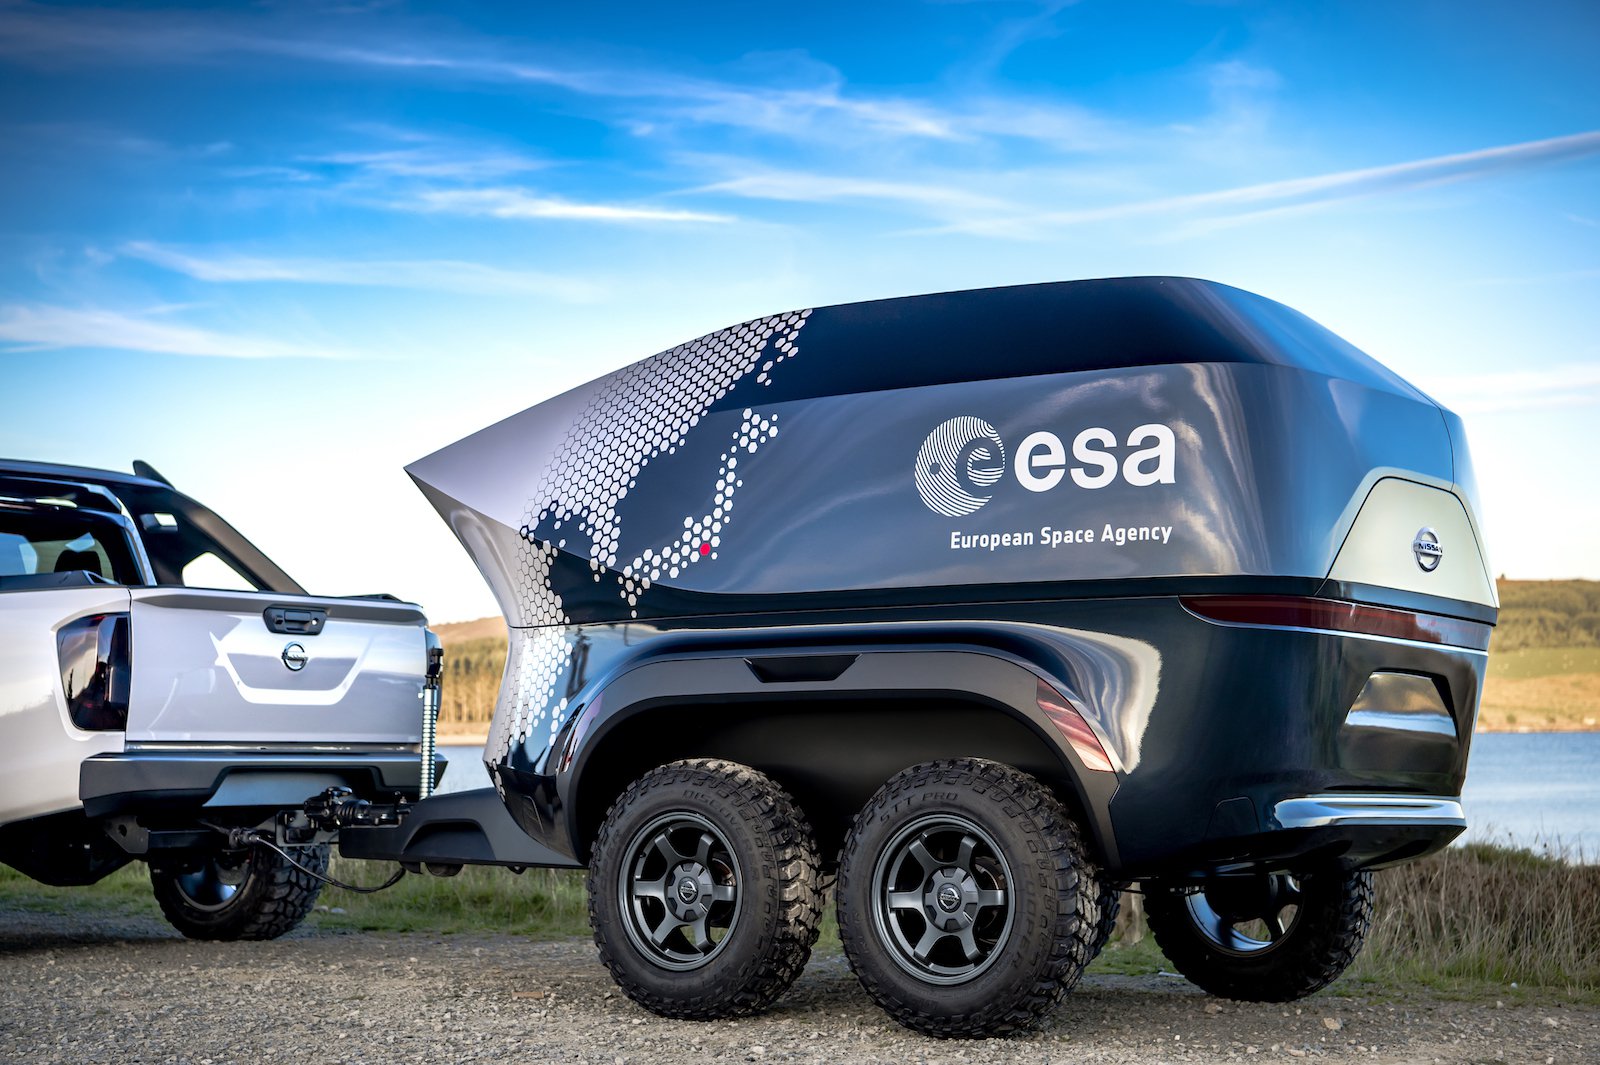 A Nissan e a ESA apresentaram um suv para os astrônomos, equipado com telescópio